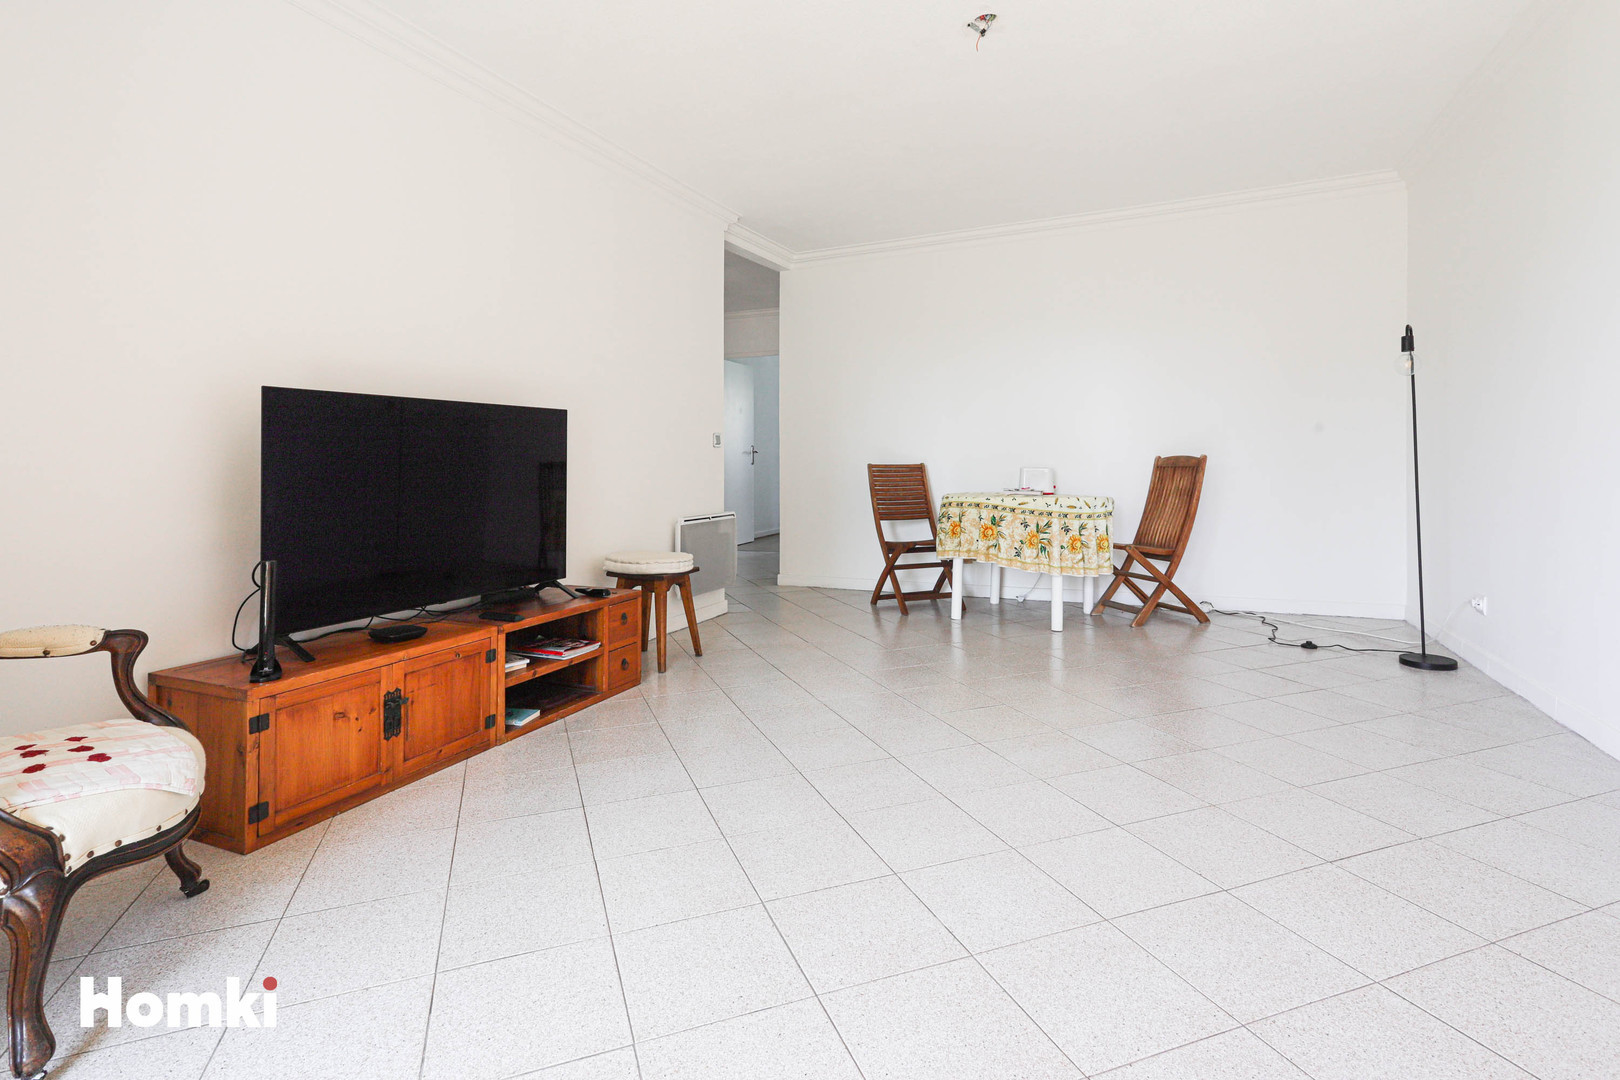 Homki - Vente Appartement  de 77.35 m² à Nice 06200